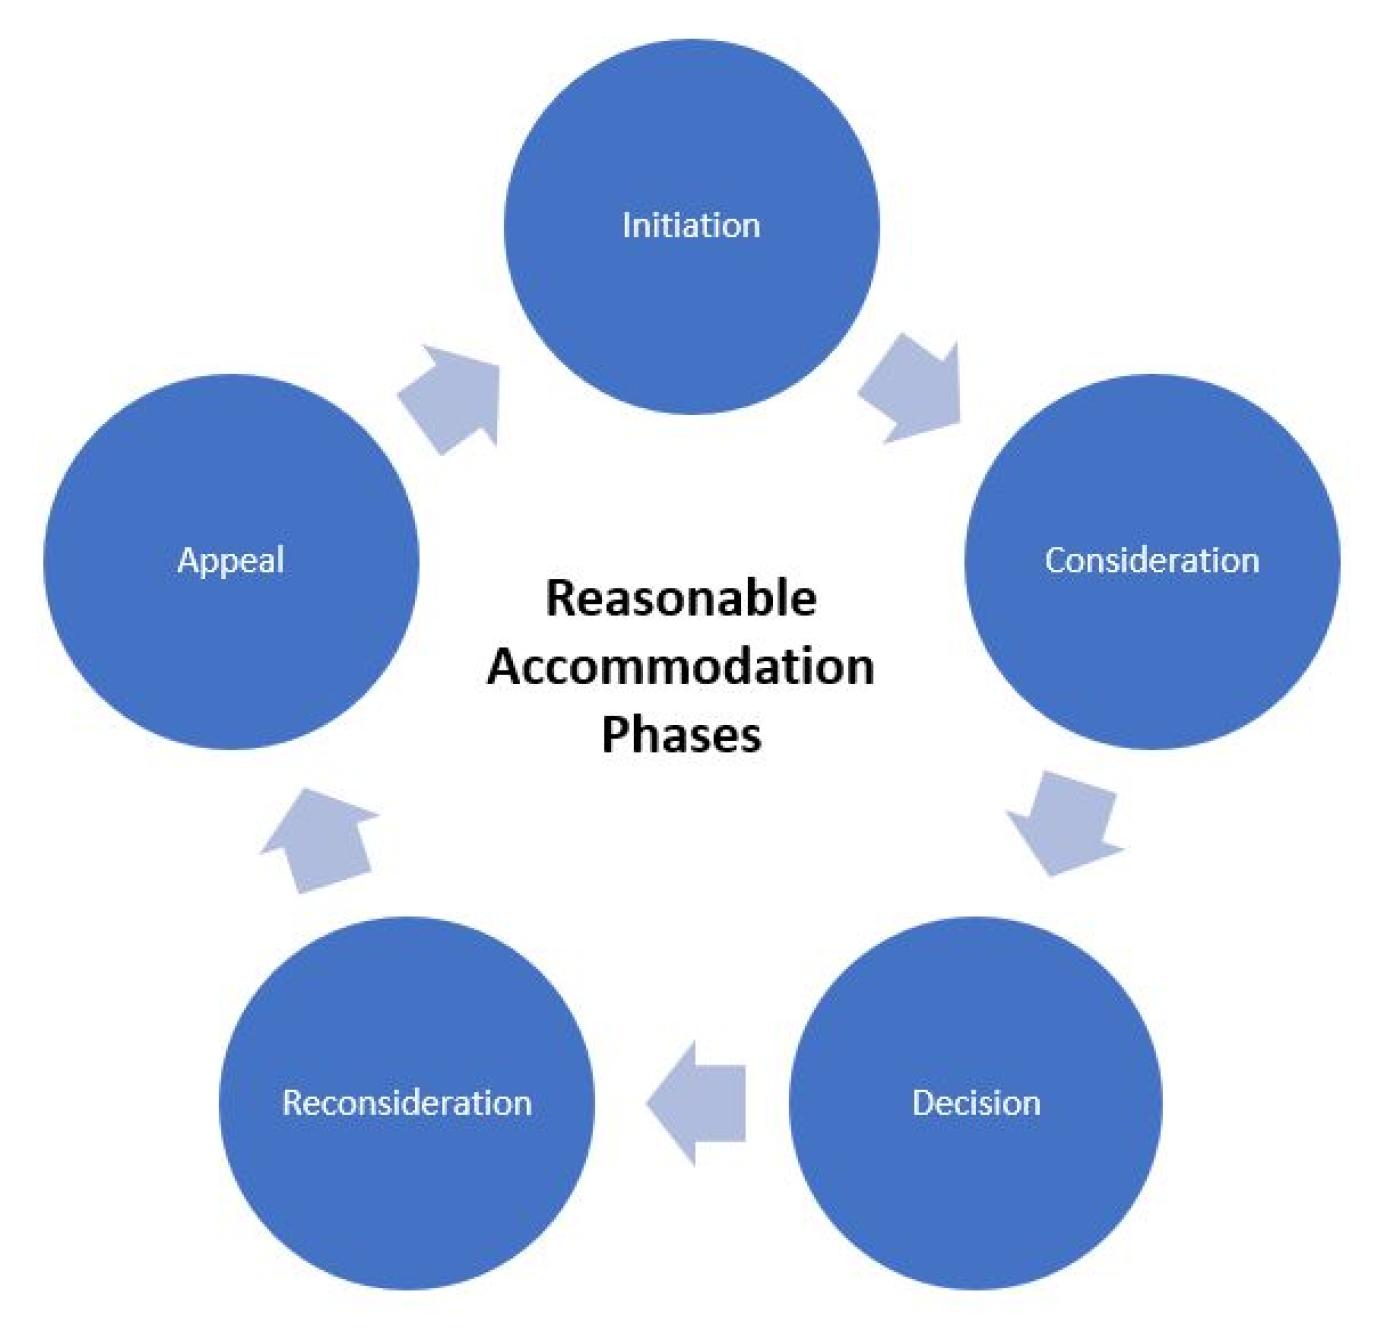 Reasonable Accommodation Phases